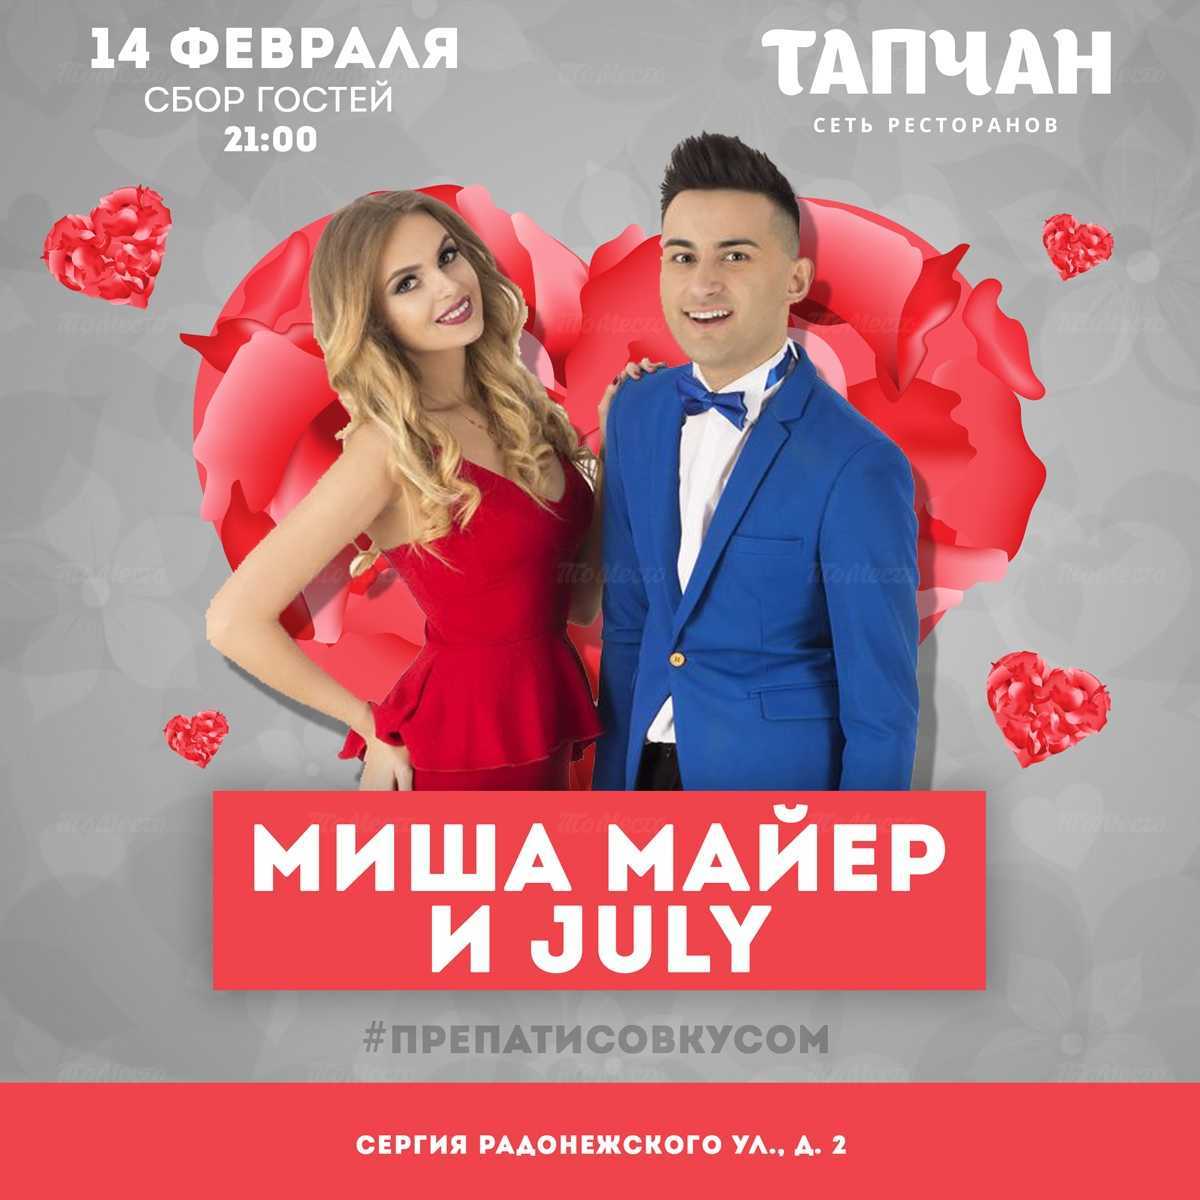 Миша Майер & July в Тапчан